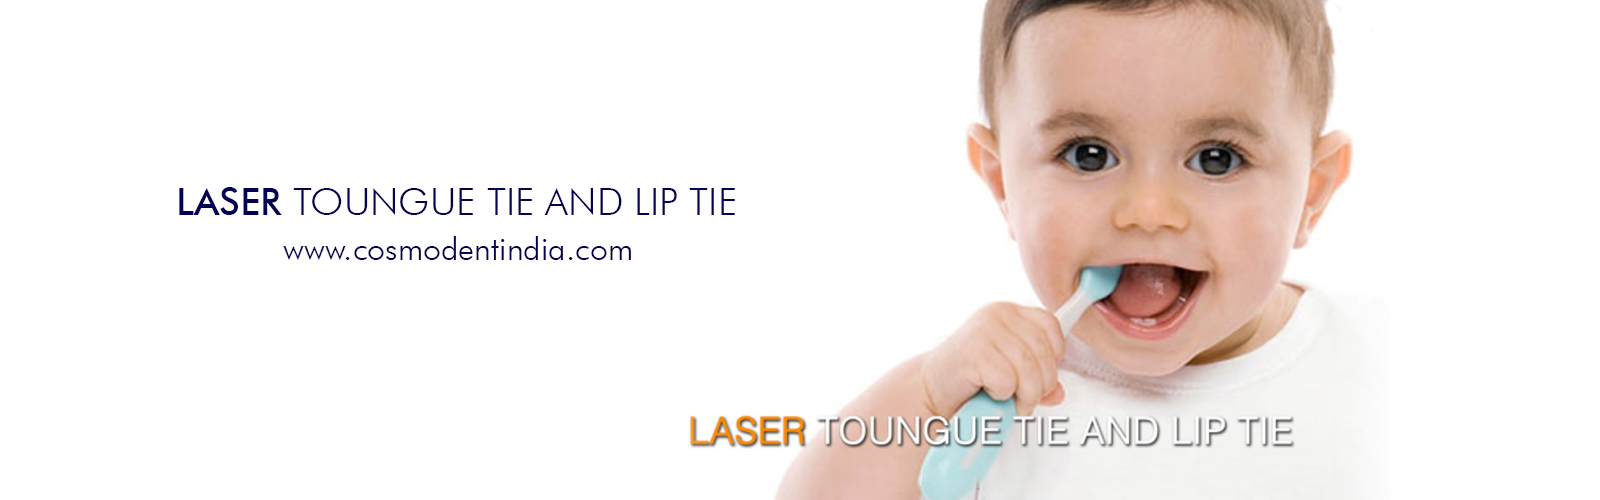 laser-toungue-tie-and-lip-tie